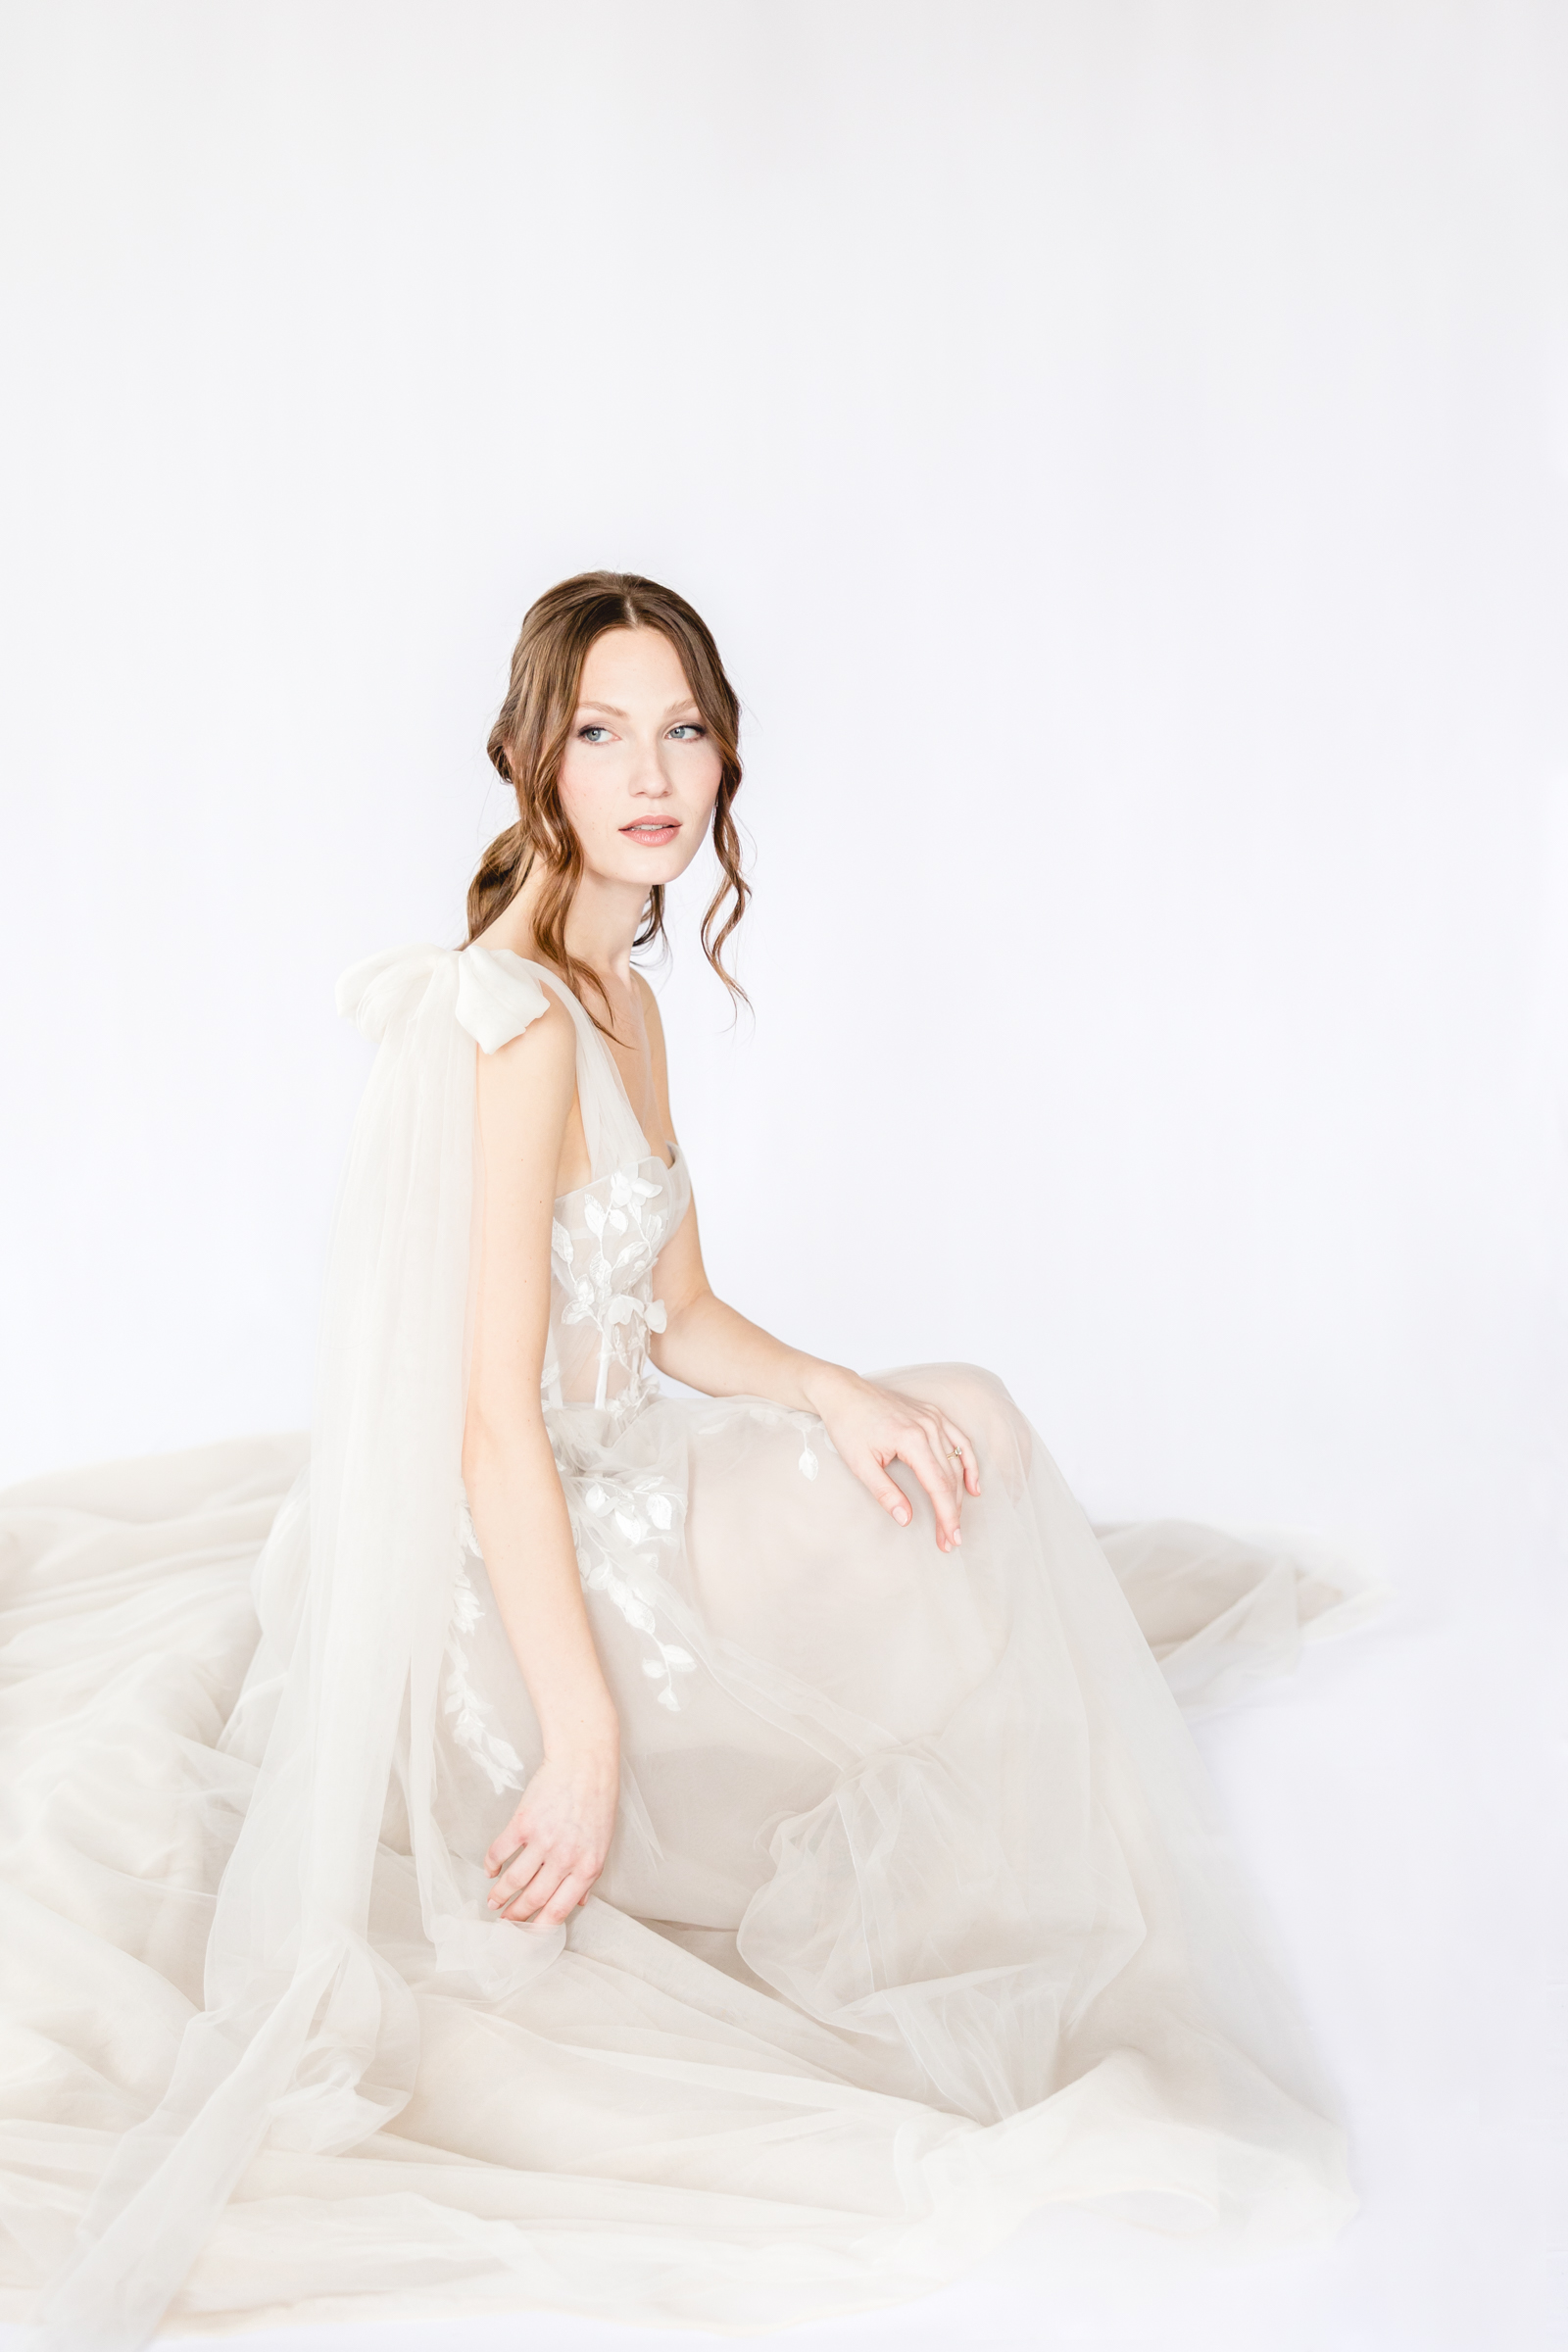 Ethereal bride sitting in a soft flowy wedding dress.